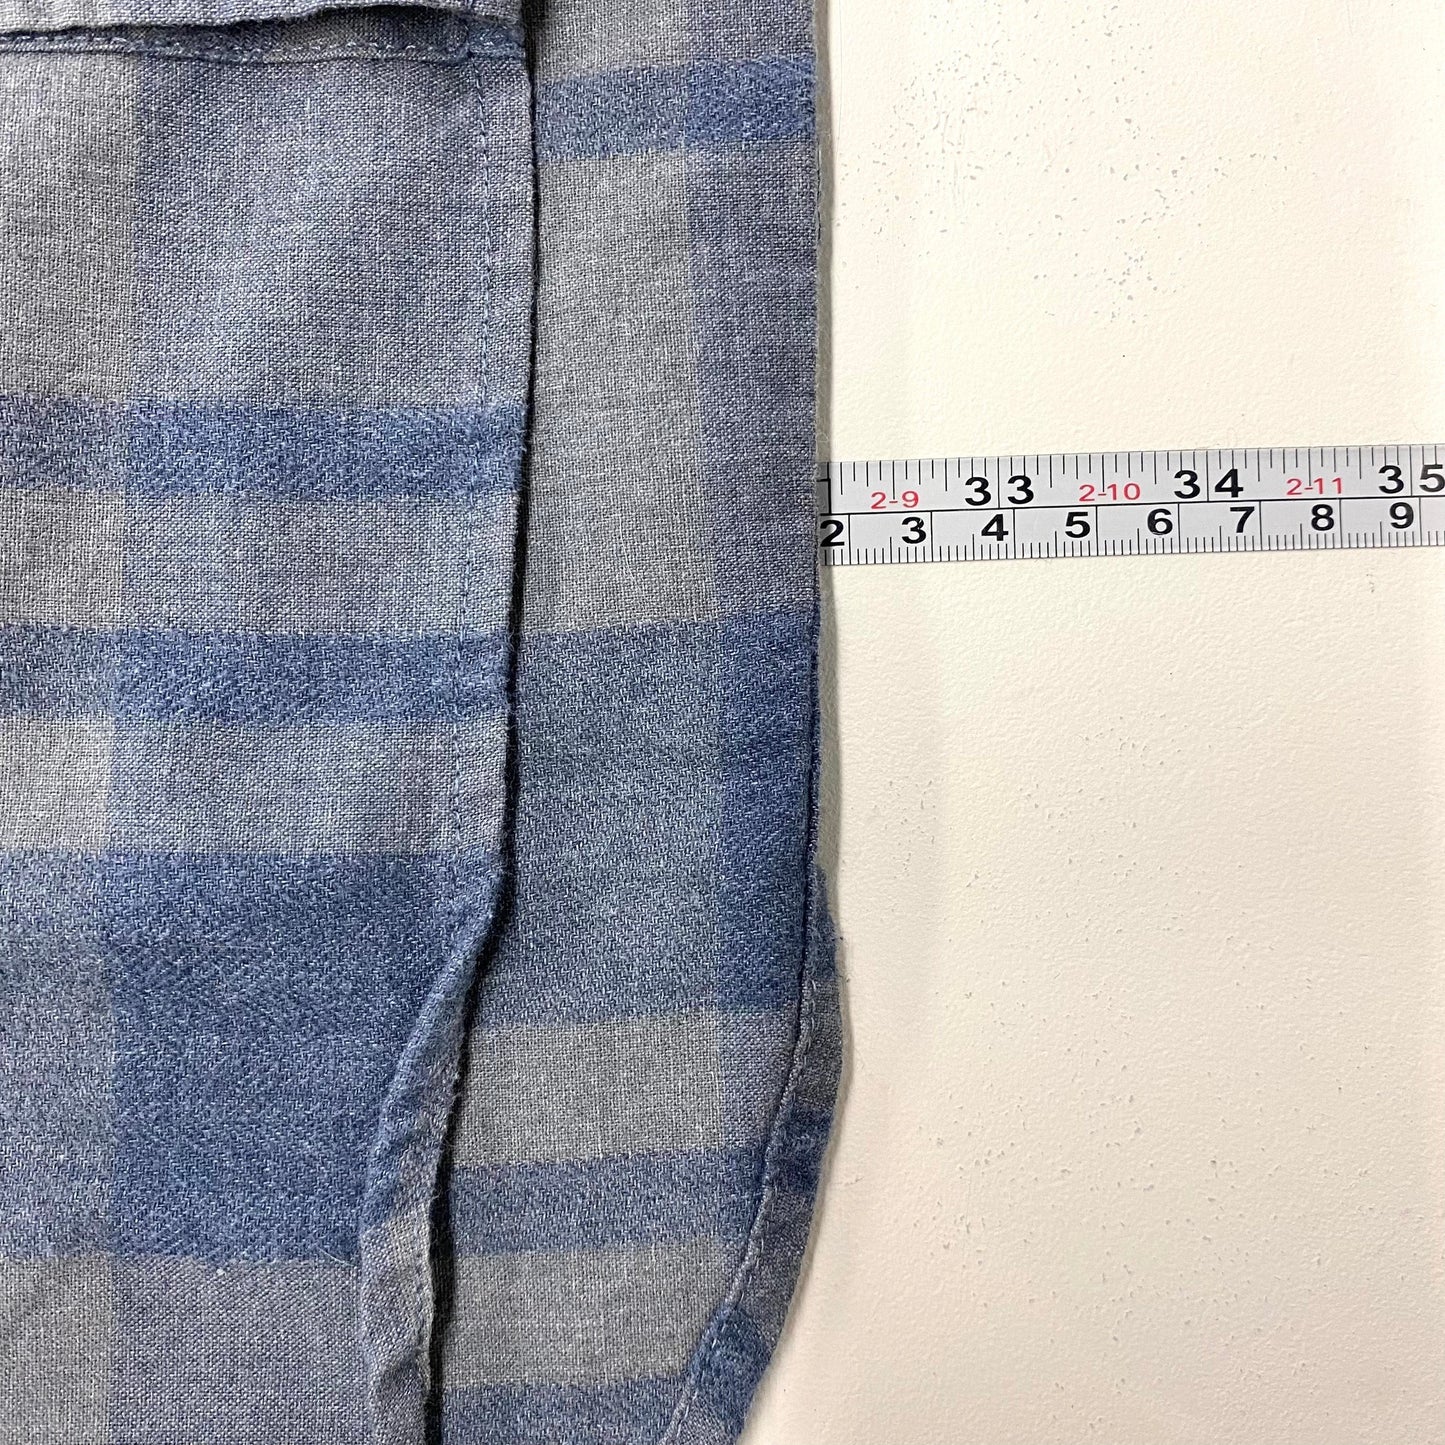 Five Four Mens Size 2X Gray/Blue Plaid Flannel Shirt L/s EUC